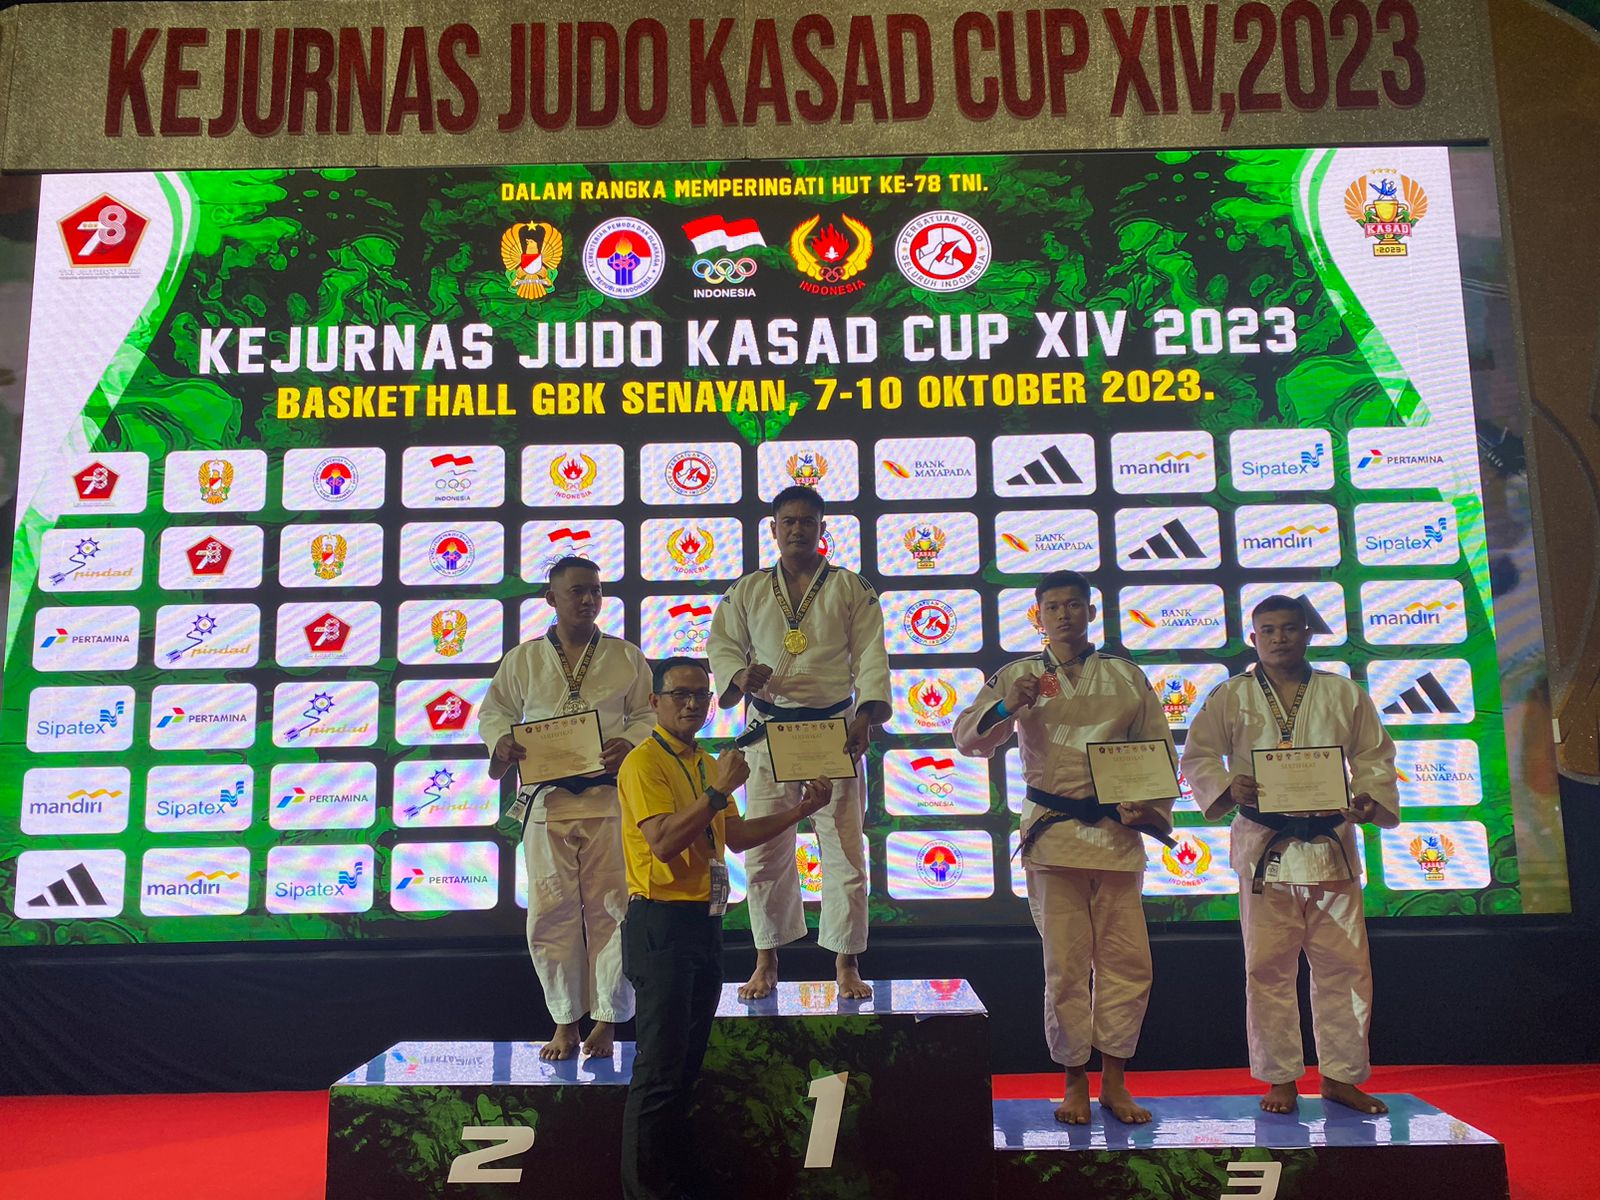 Tampil Gemilang, Anggota Kodim Surabaya Timur Gondol Emas di Kerjunas Judo Kasad Cup